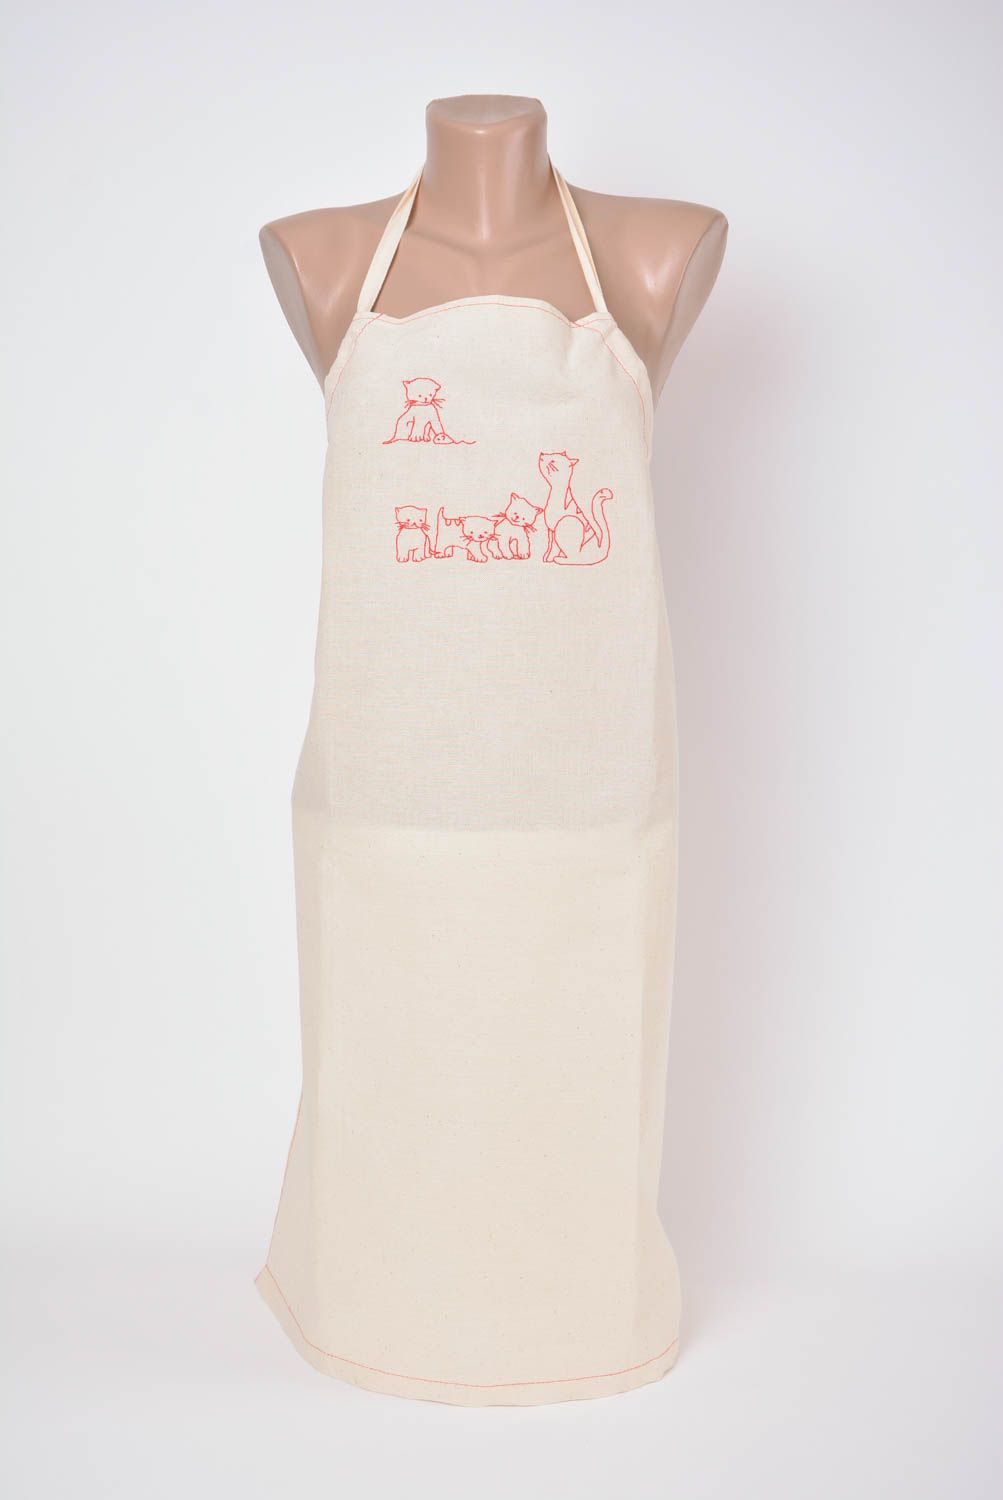 Textil Schürze für Frauen aus Halbleinen mit Stickerei weiß handmade Katzen foto 1